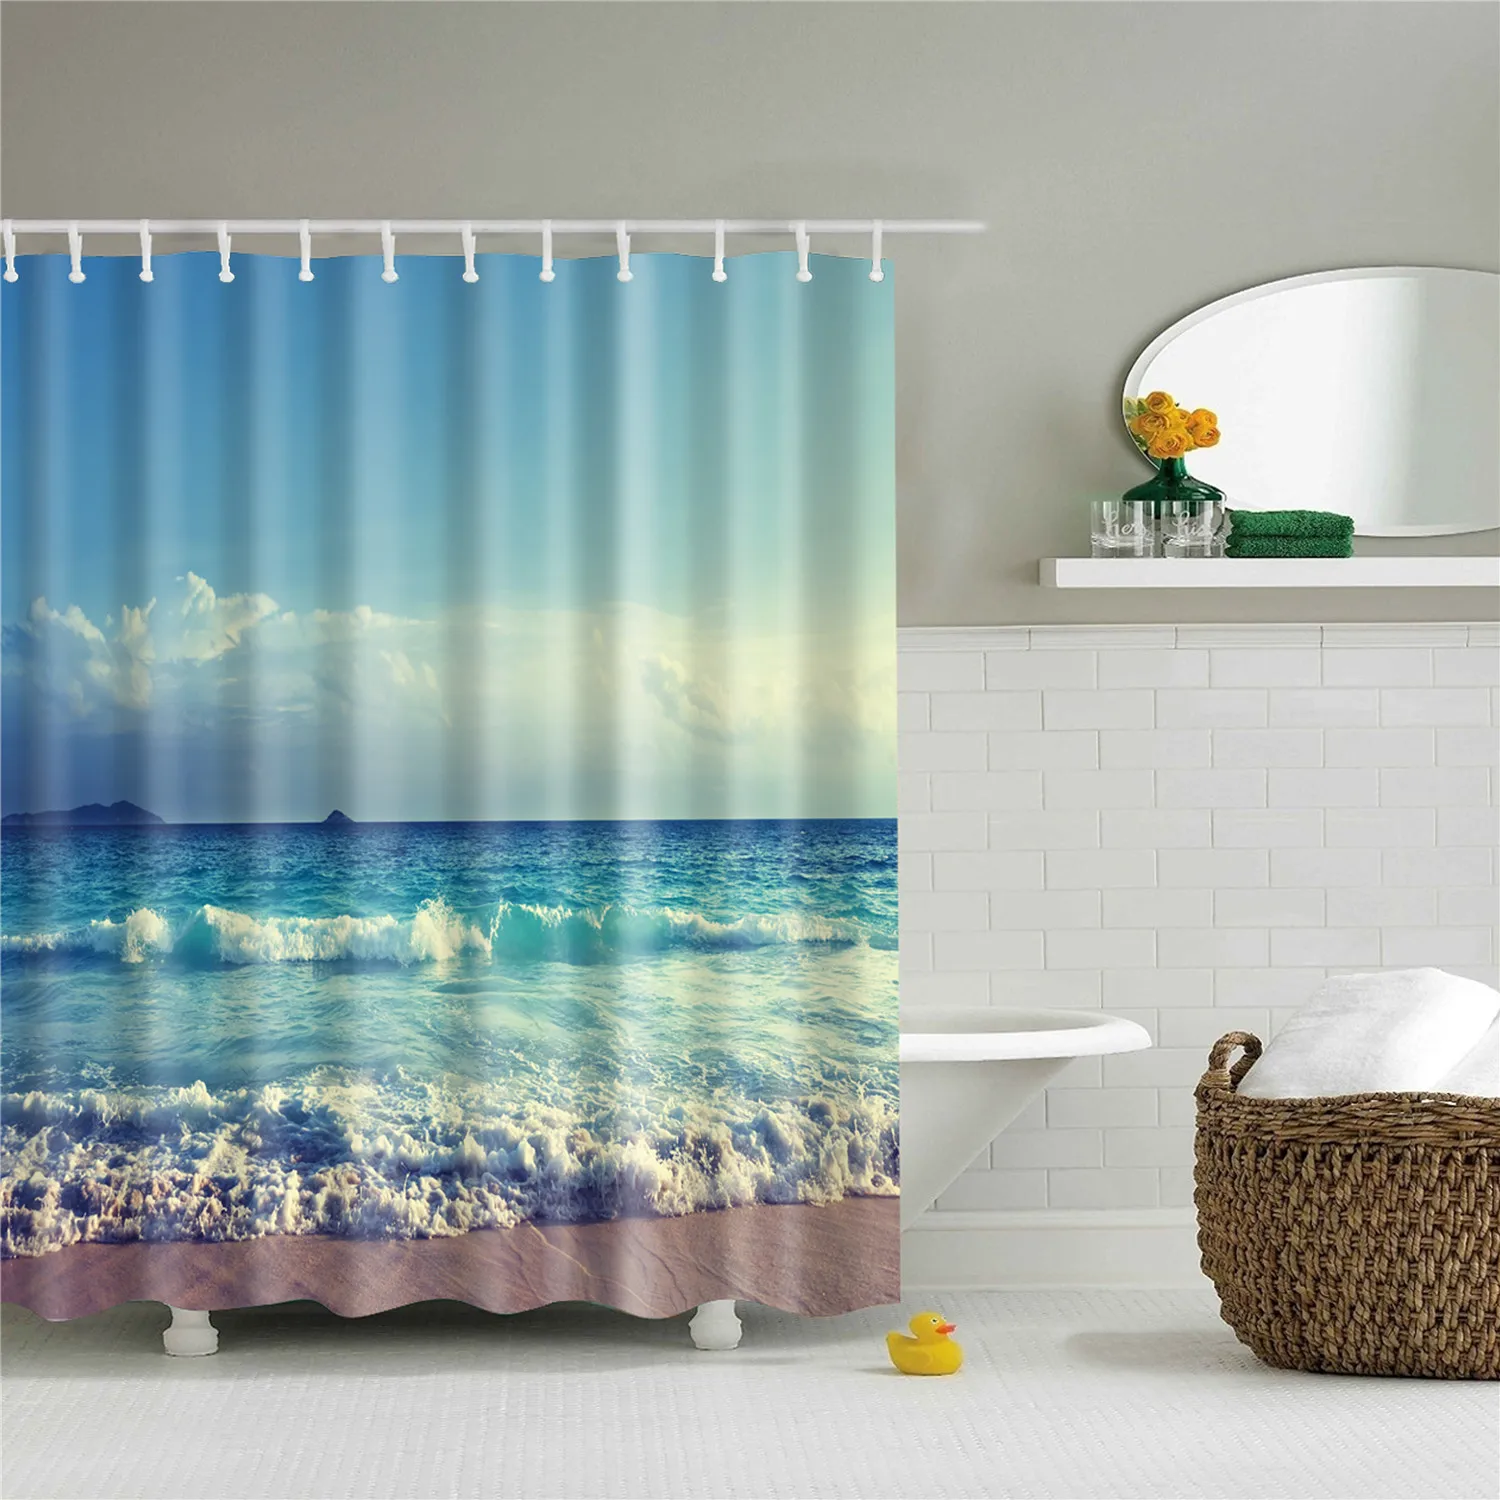 Seashell пляжная Ванна занавес 180x200 см Большая водонепроницаемая полиэфирная занавеска для душа 3D затемненная шторка для ванной занавеска - Цвет: TZ161227